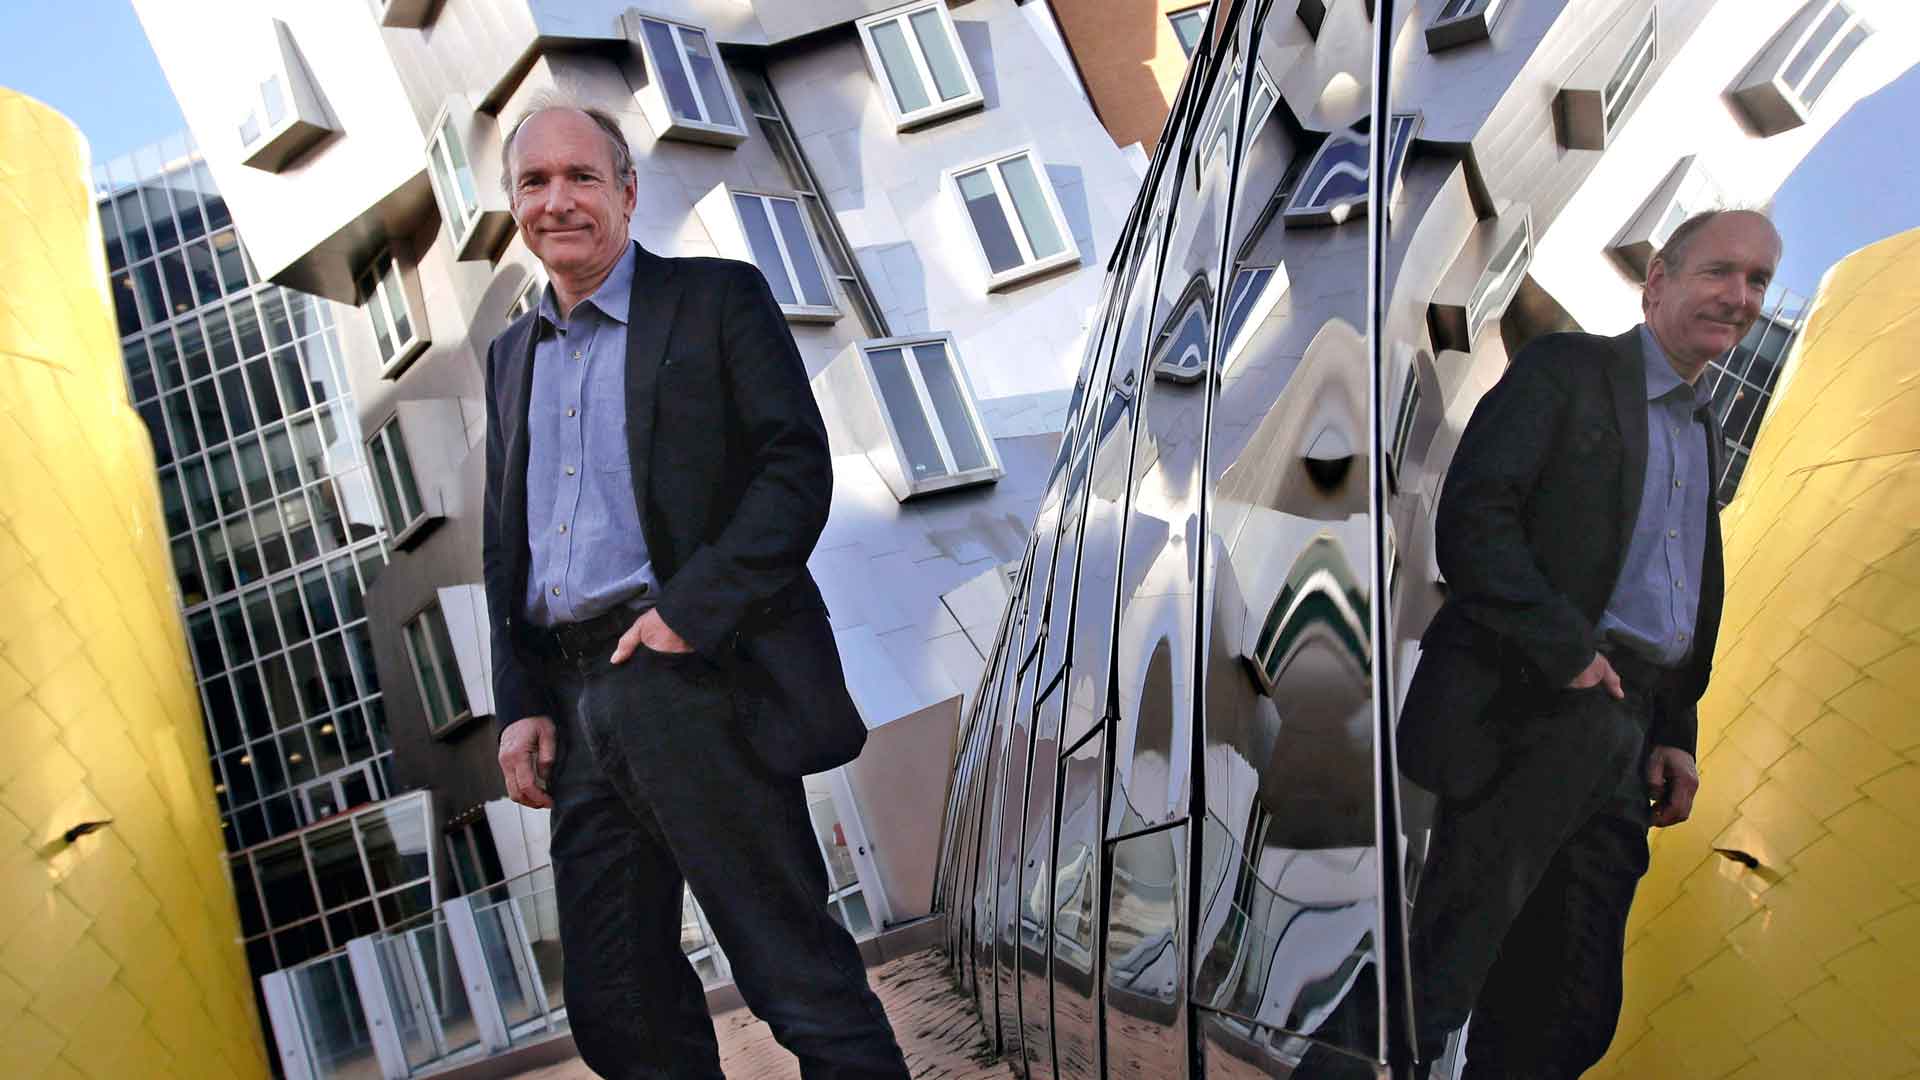 Solid y la lucha de Tim Berners-Lee por un internet justo, abierto y descentralizado